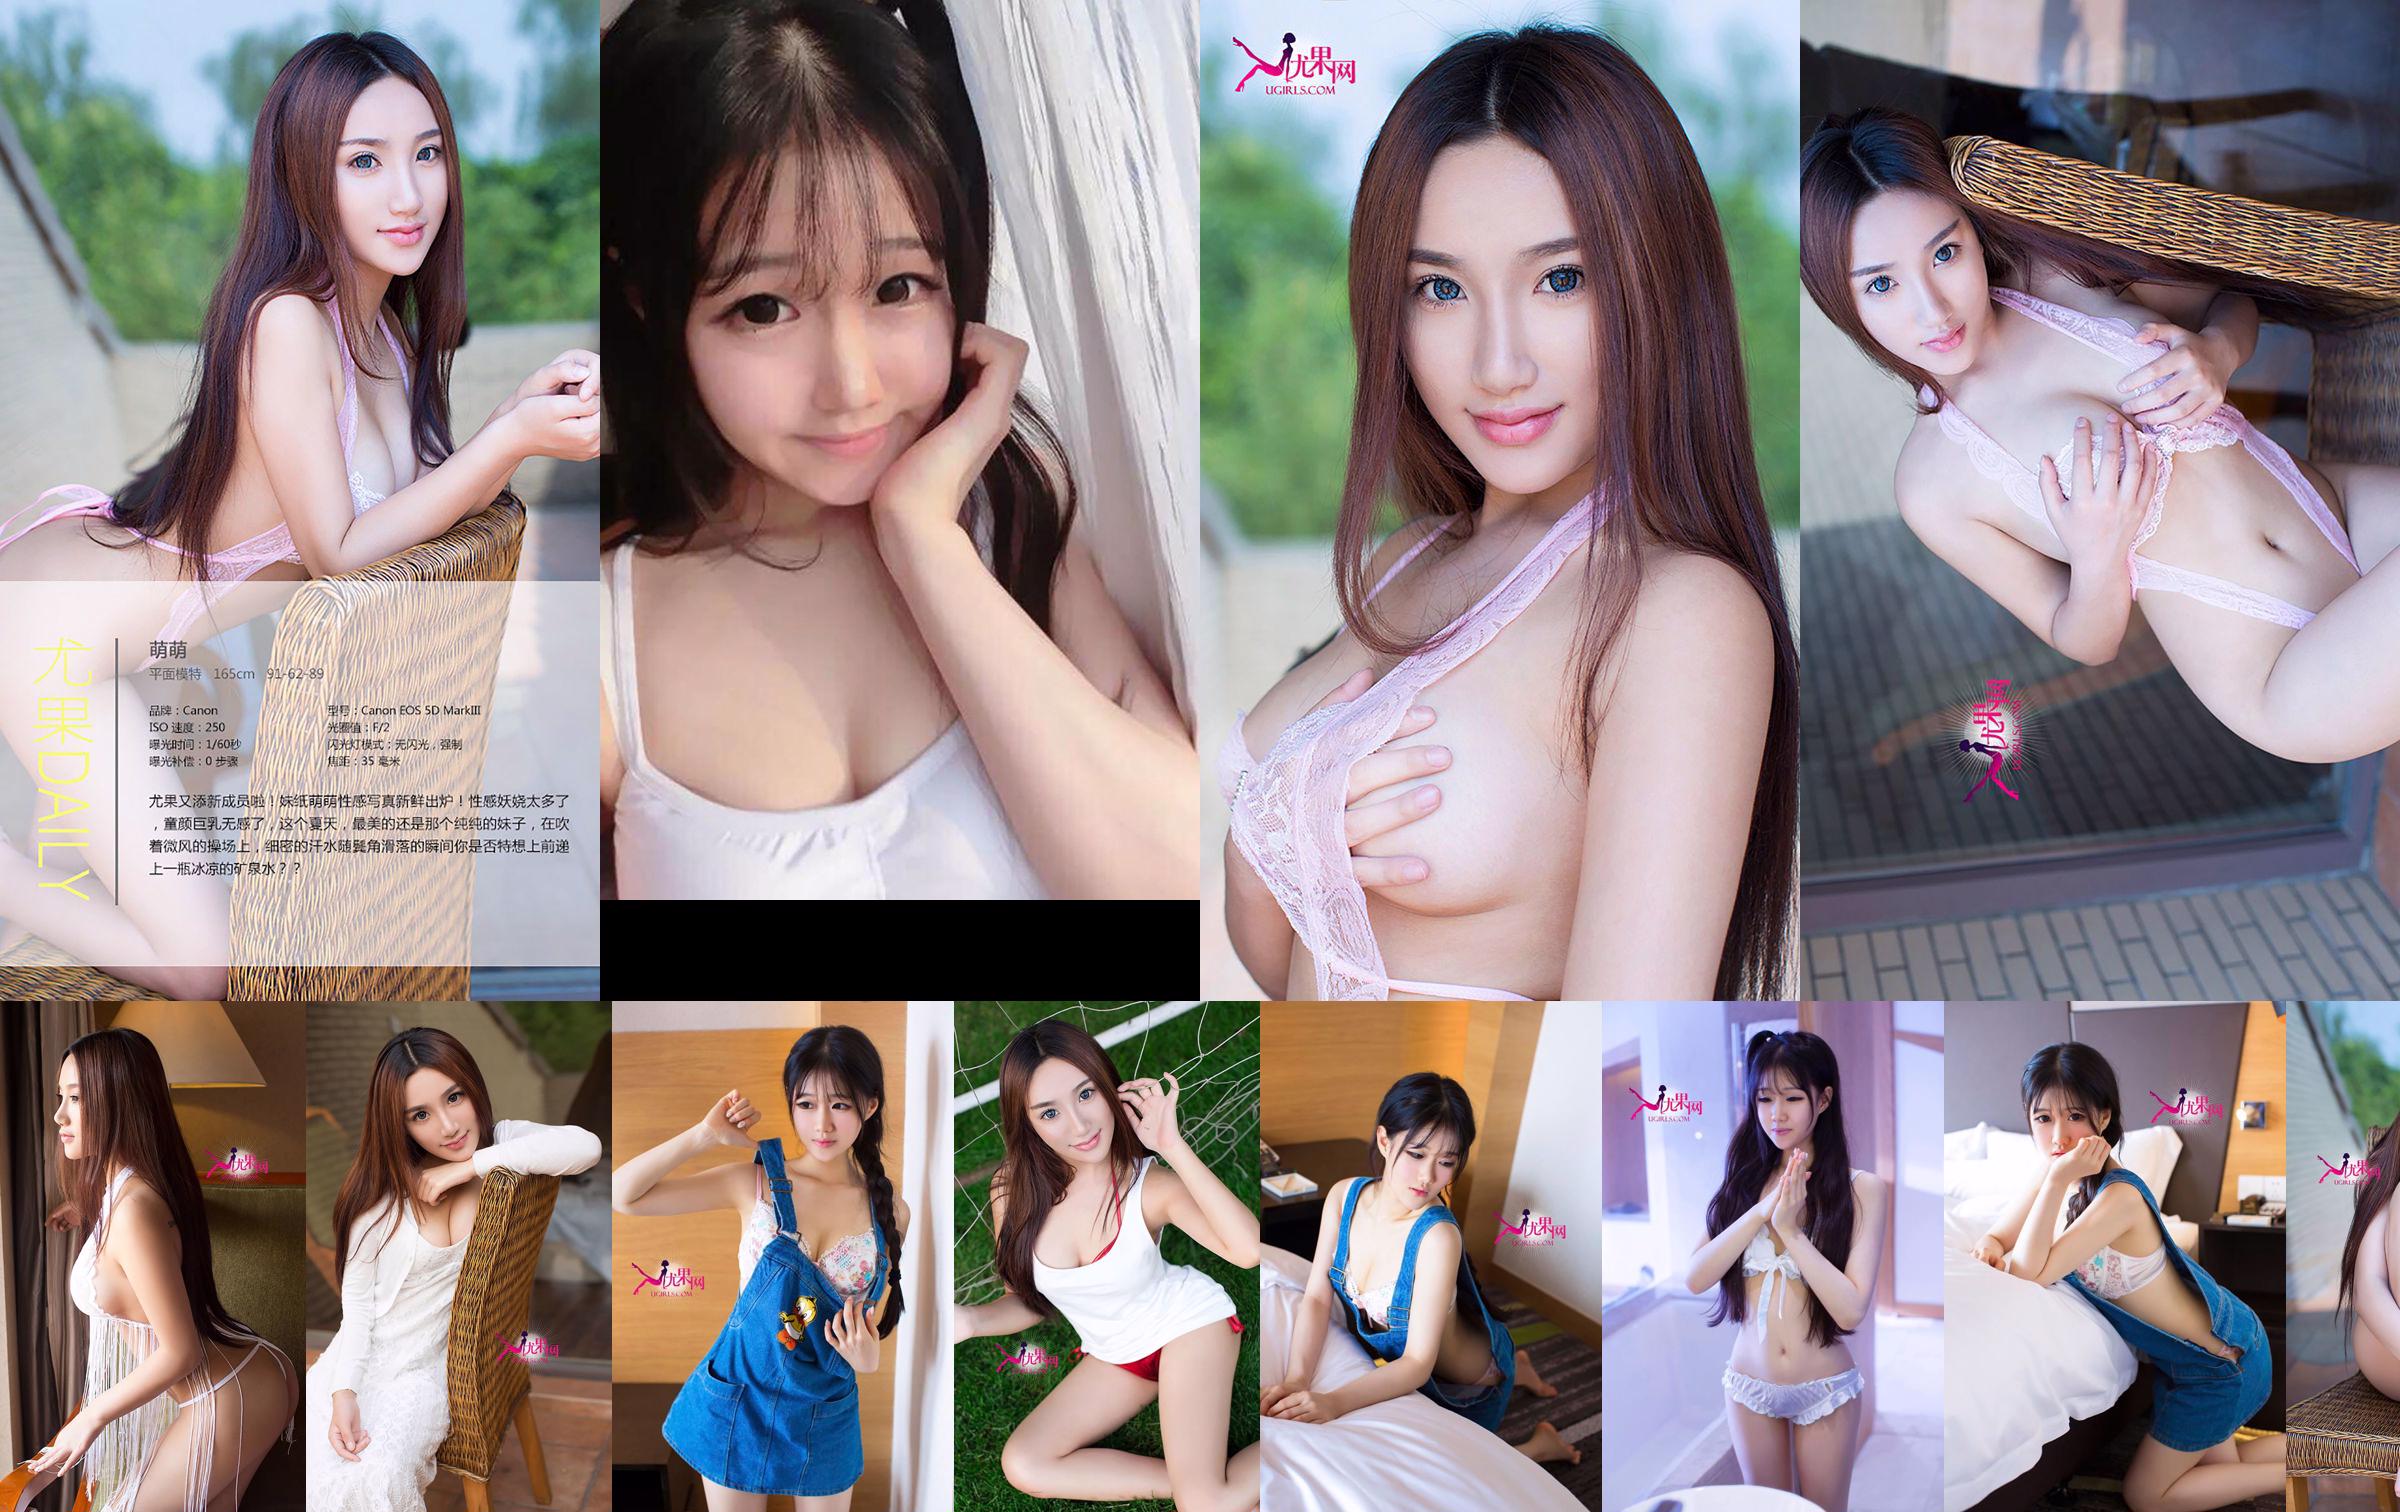 Chen Yumeng "Gadis Cantik Itu Tidak Berbahaya dan Membangkitkan Cinta" [Ugirls] No.098 No.a40215 Halaman 1